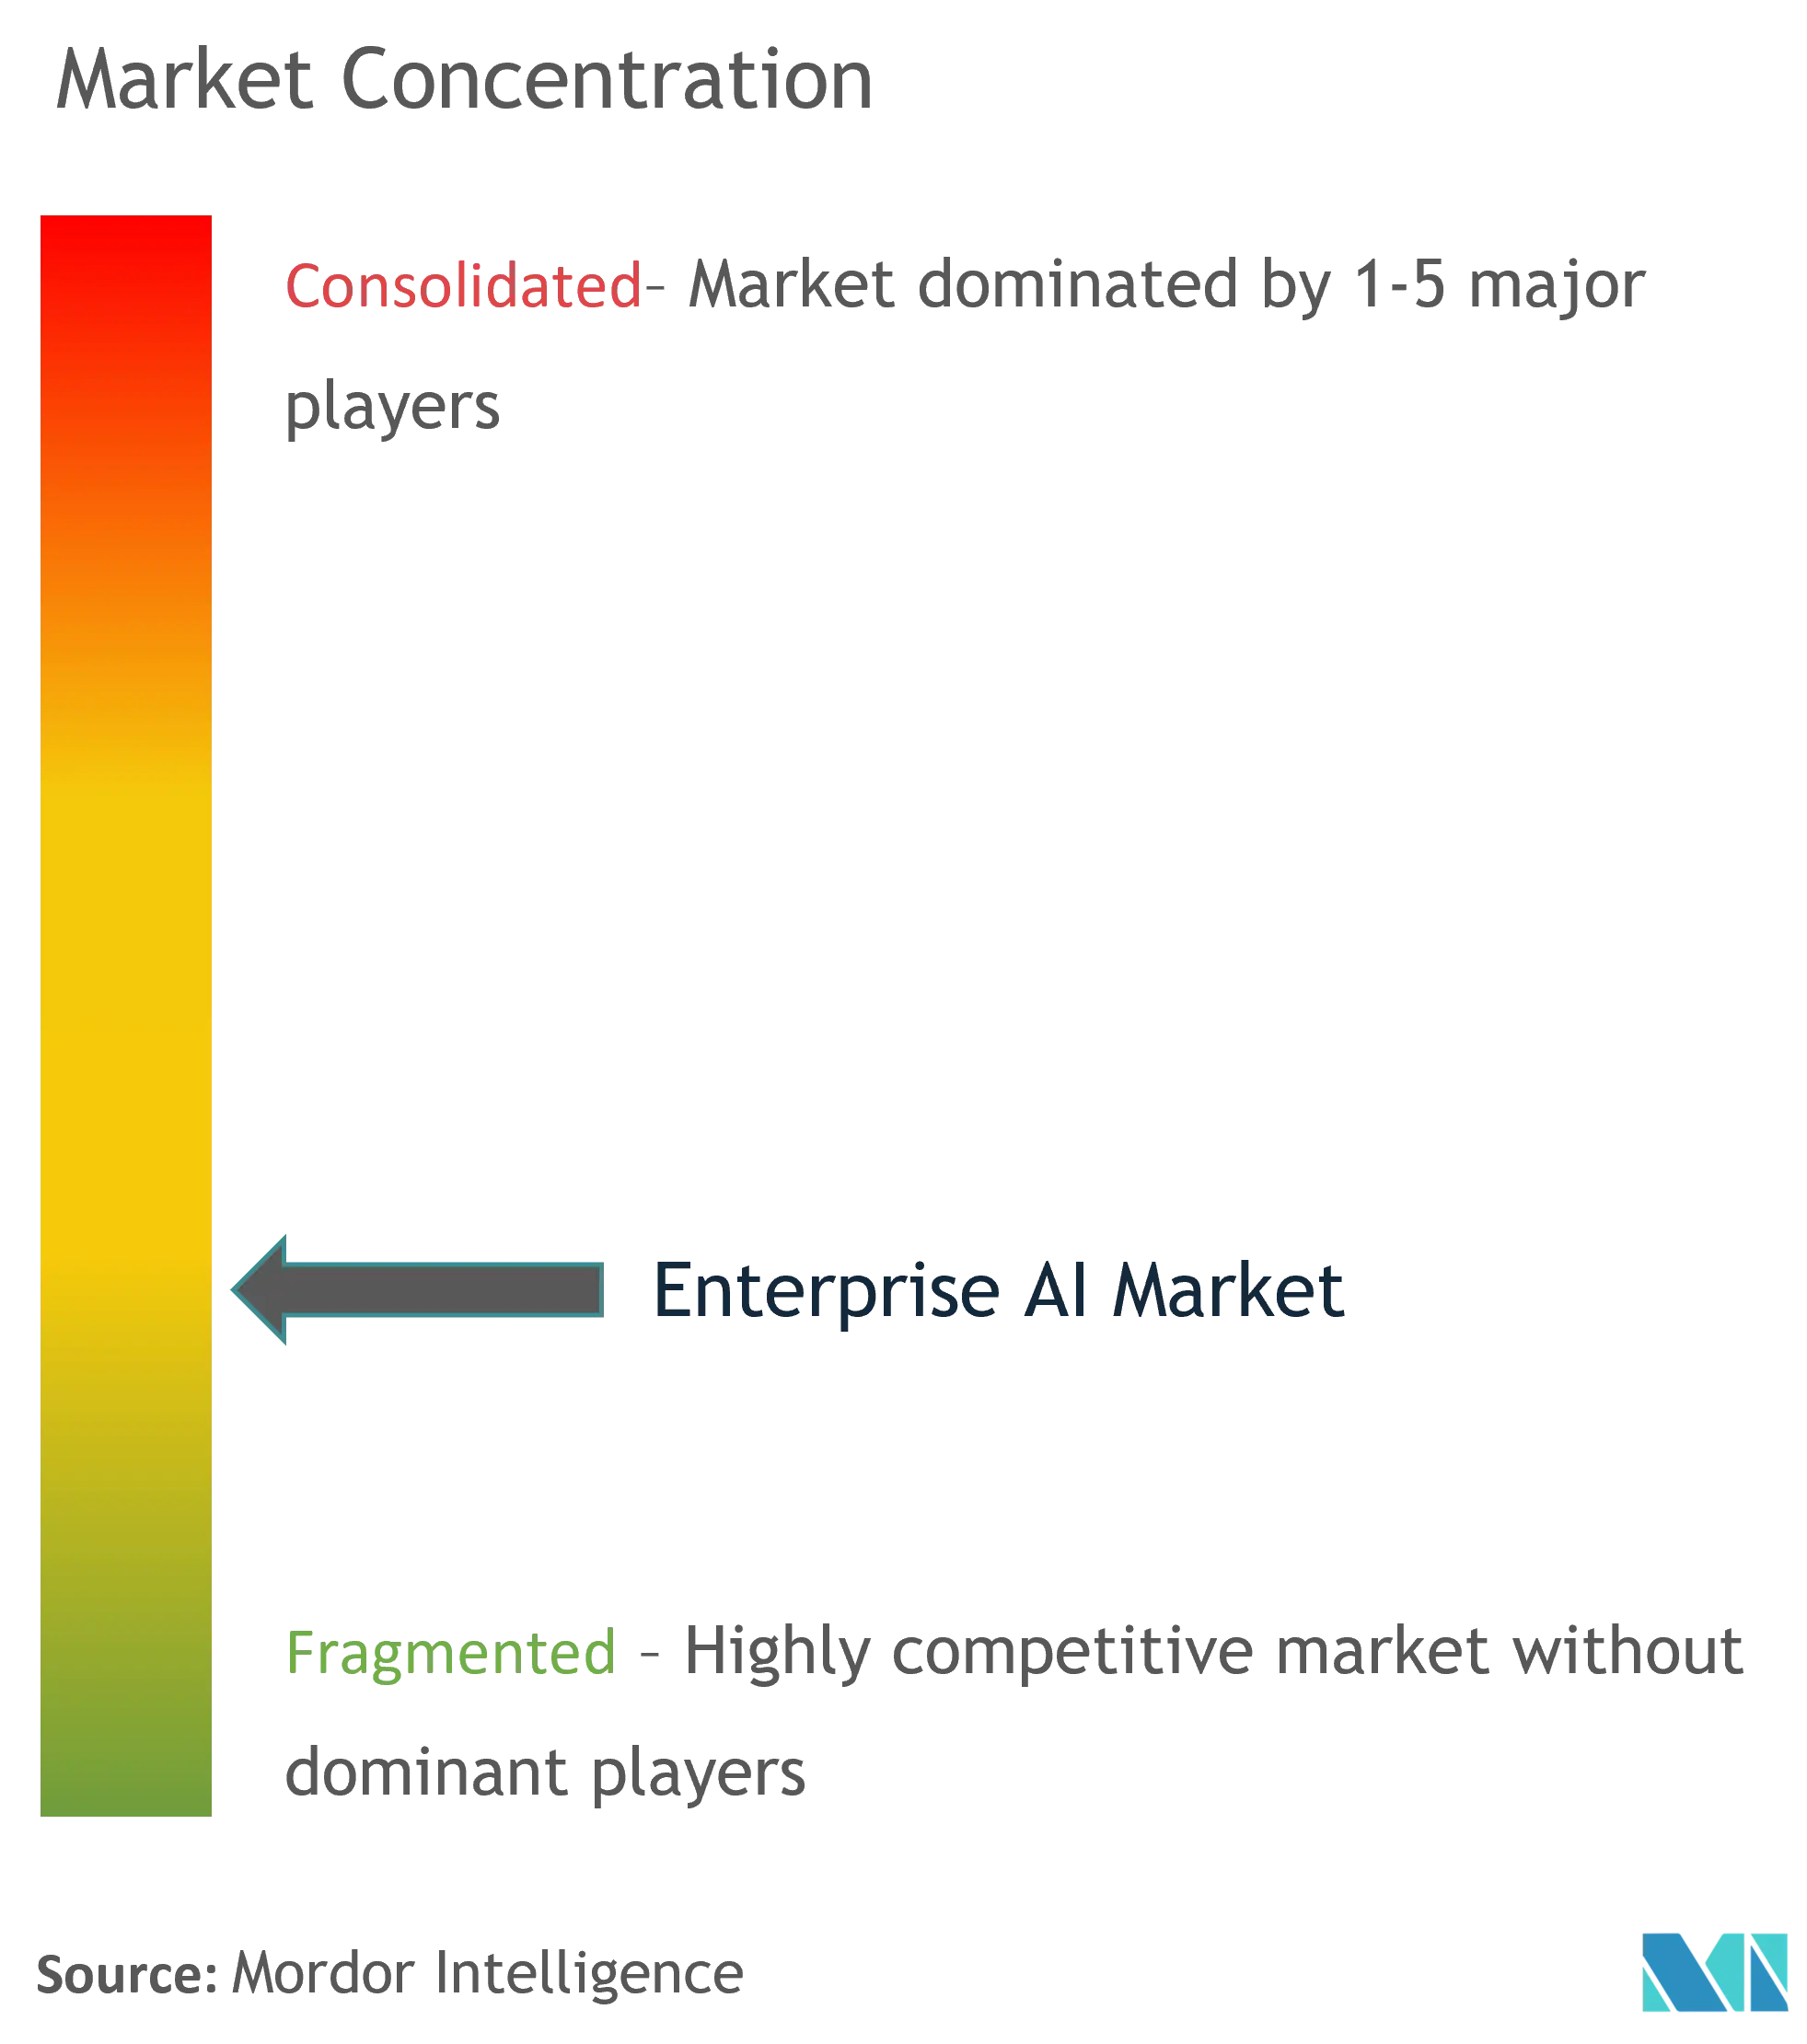 Enterprise AI Market - Market Concentration.png